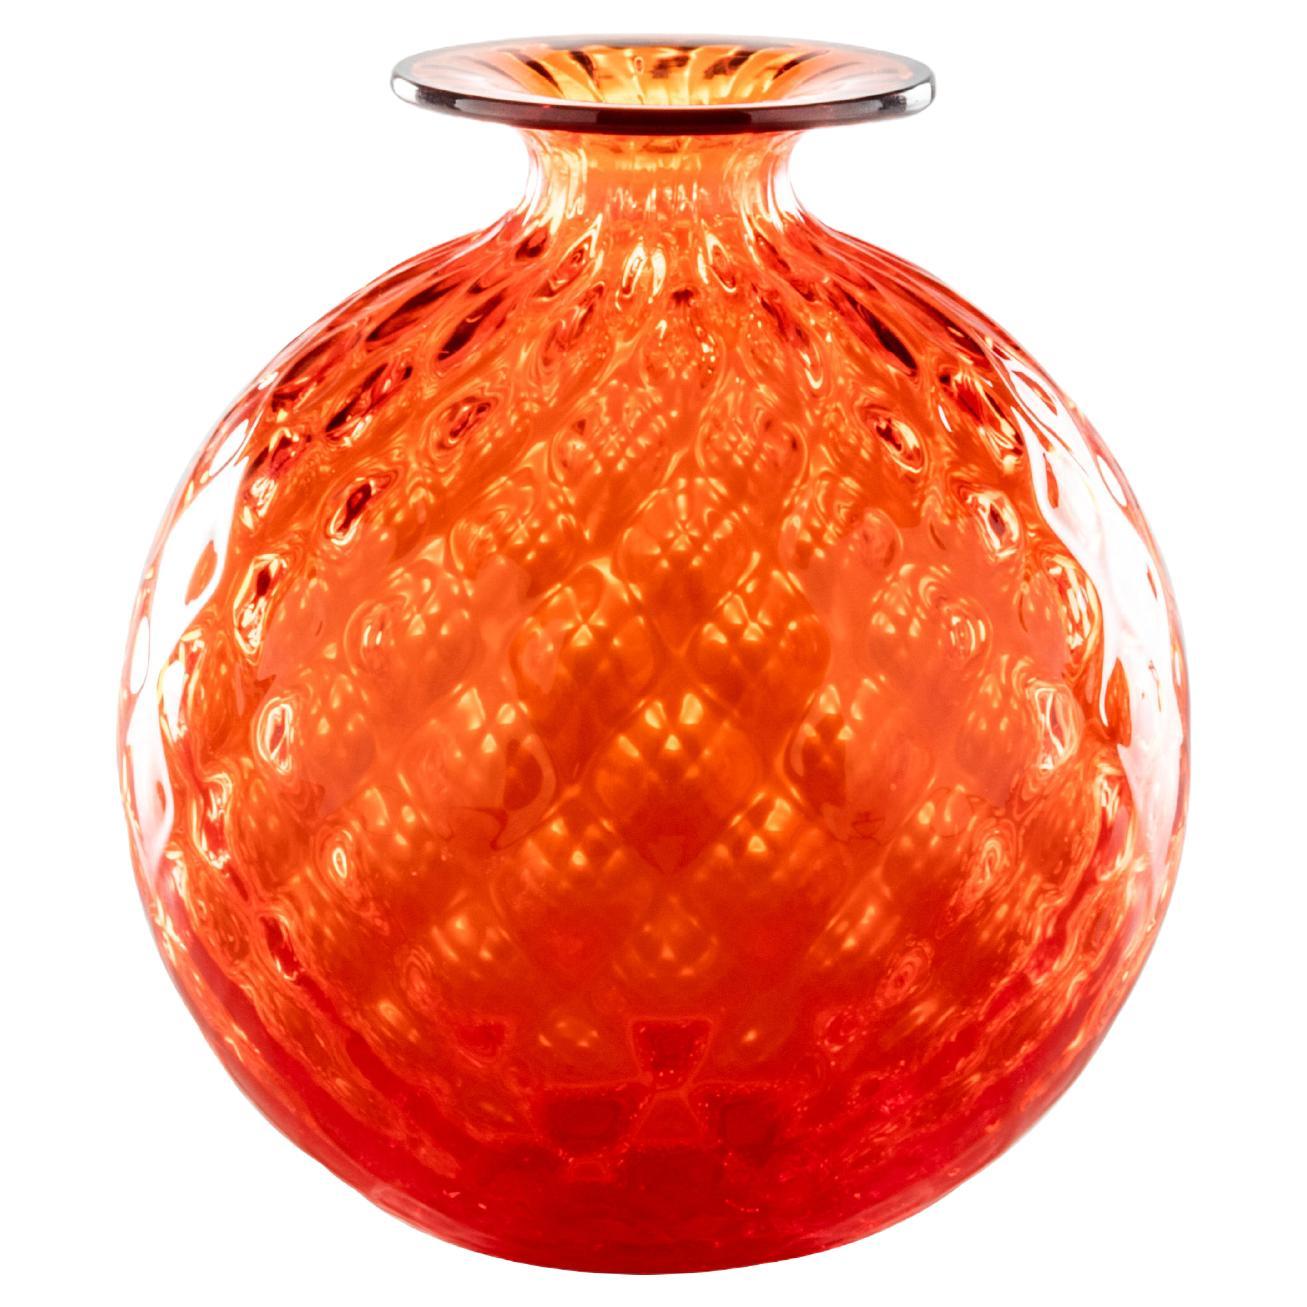 Monofiore Balloton Glass Vase in Orange with Red Thread Rim by Venini For Sale